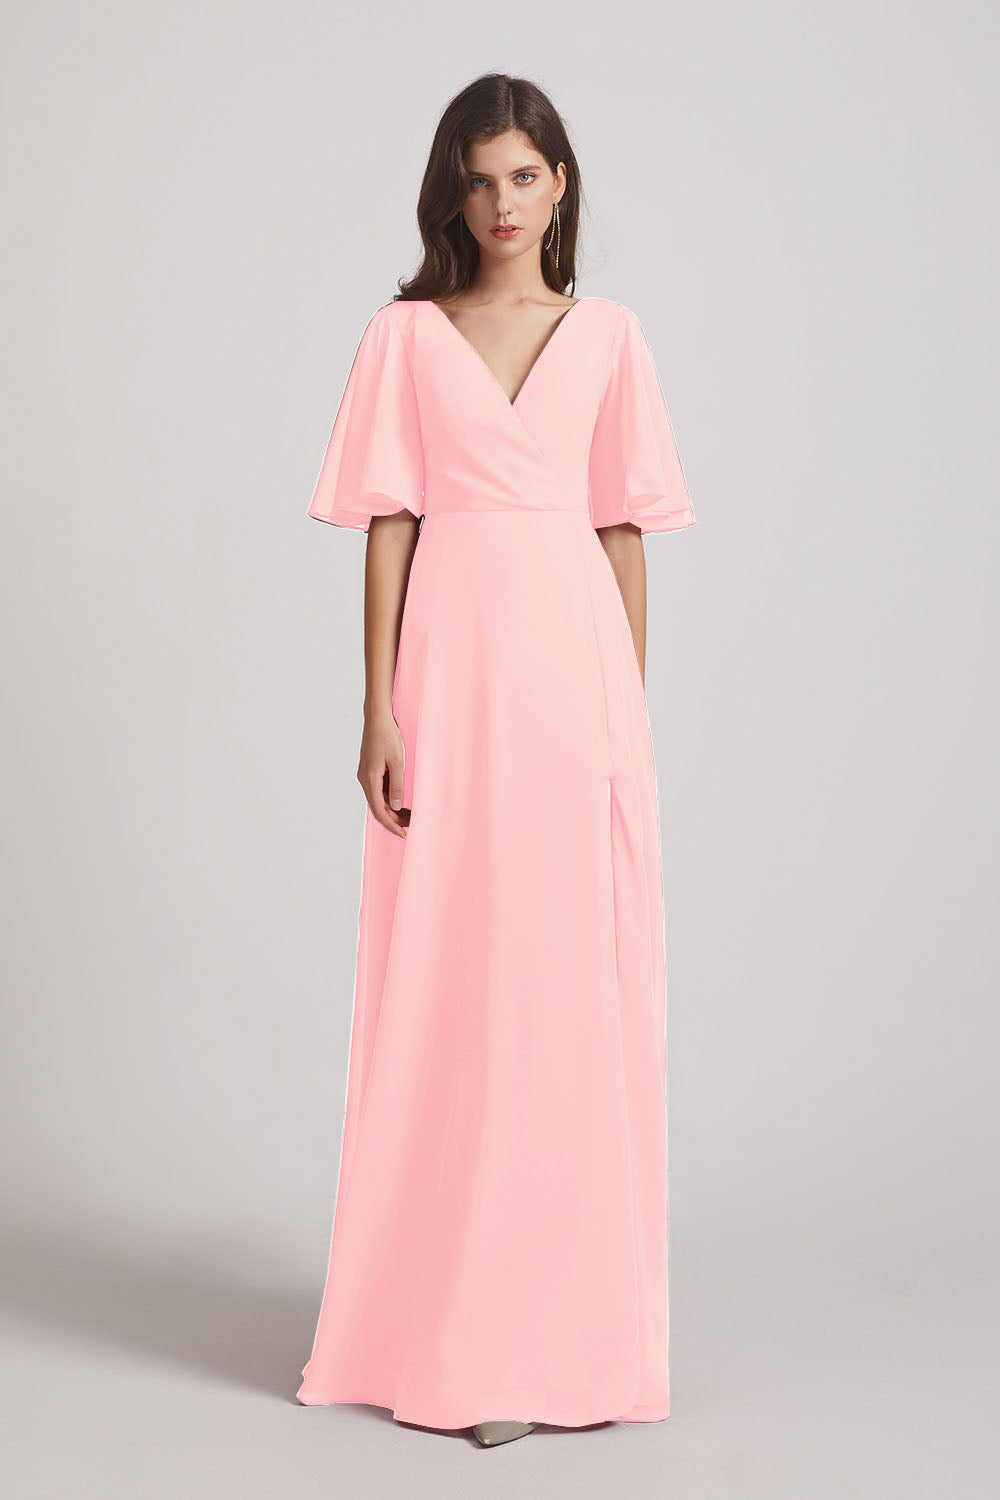 Alfa Bridal Pink V-Neck Chiffon Side Slit Bridesmaid Dresses With Flutter Half Sleeves (AF0056)